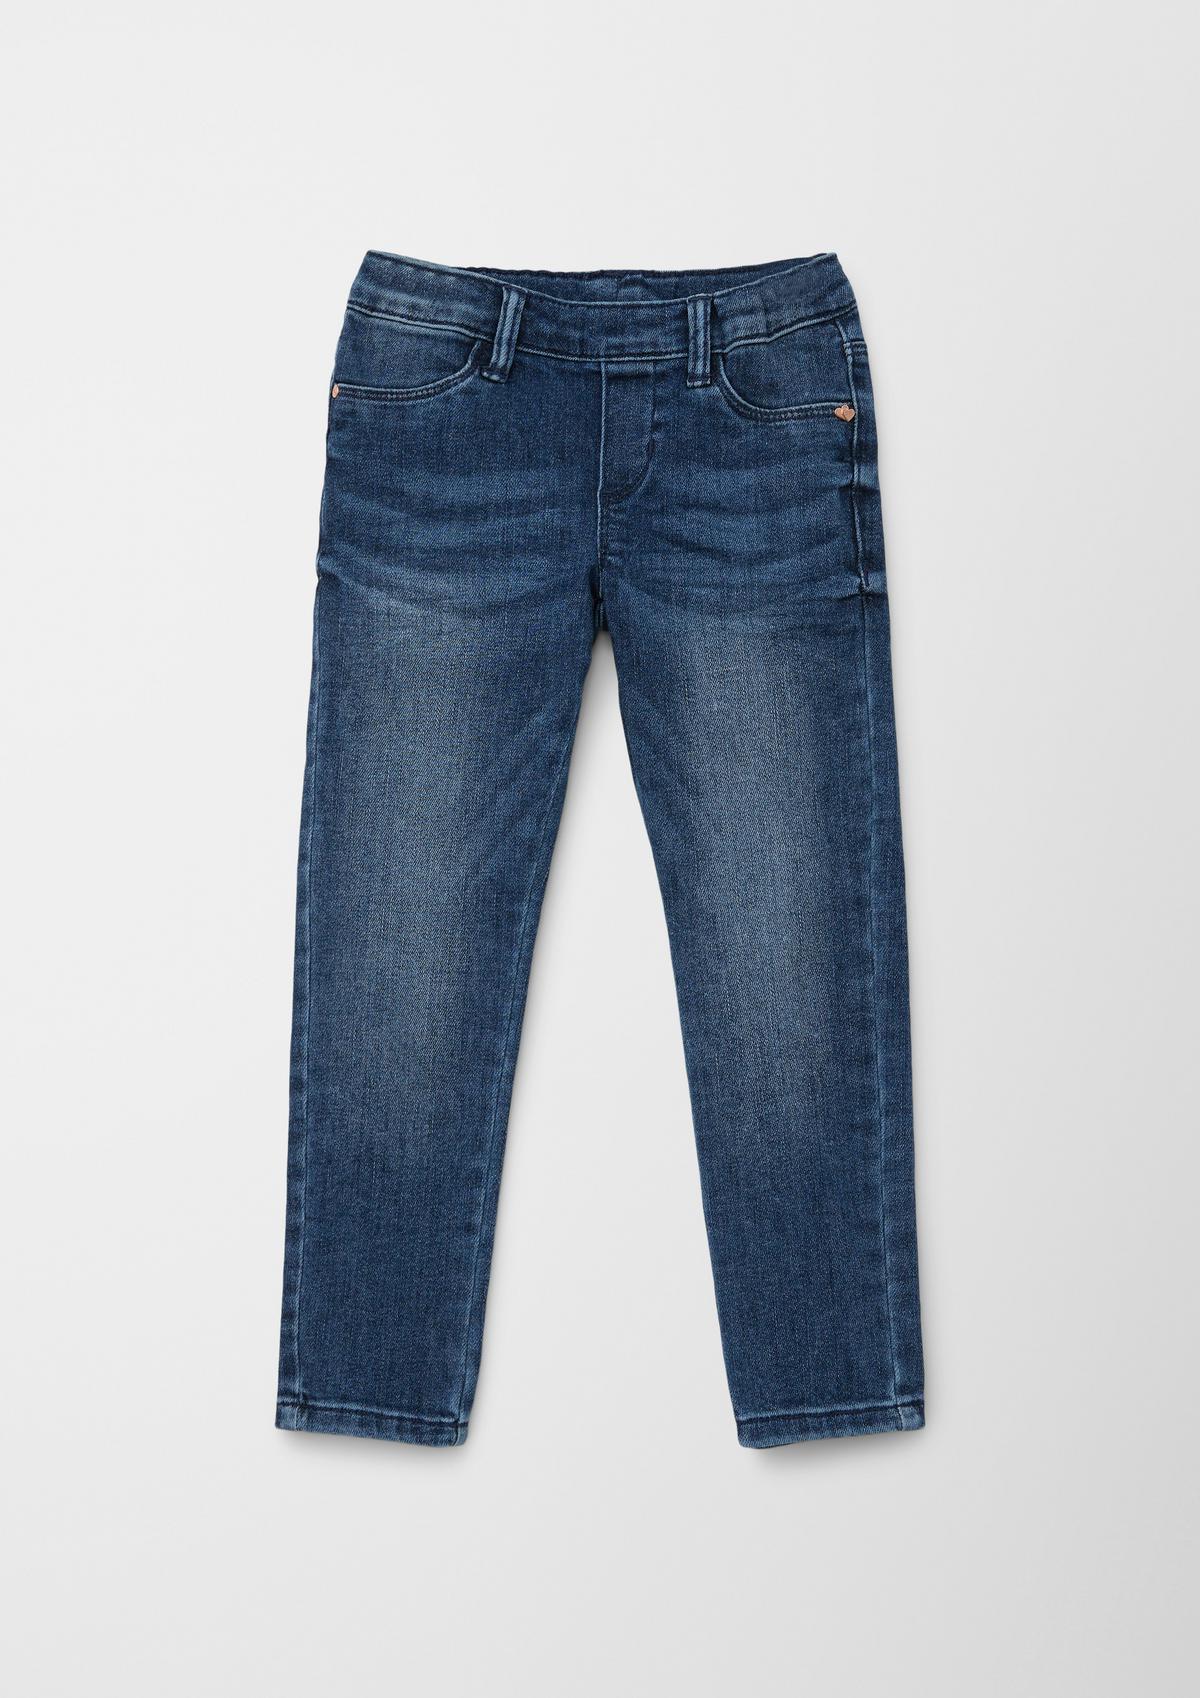 Jeans tregging / slim fit / mid rise / slim leg / elastische band